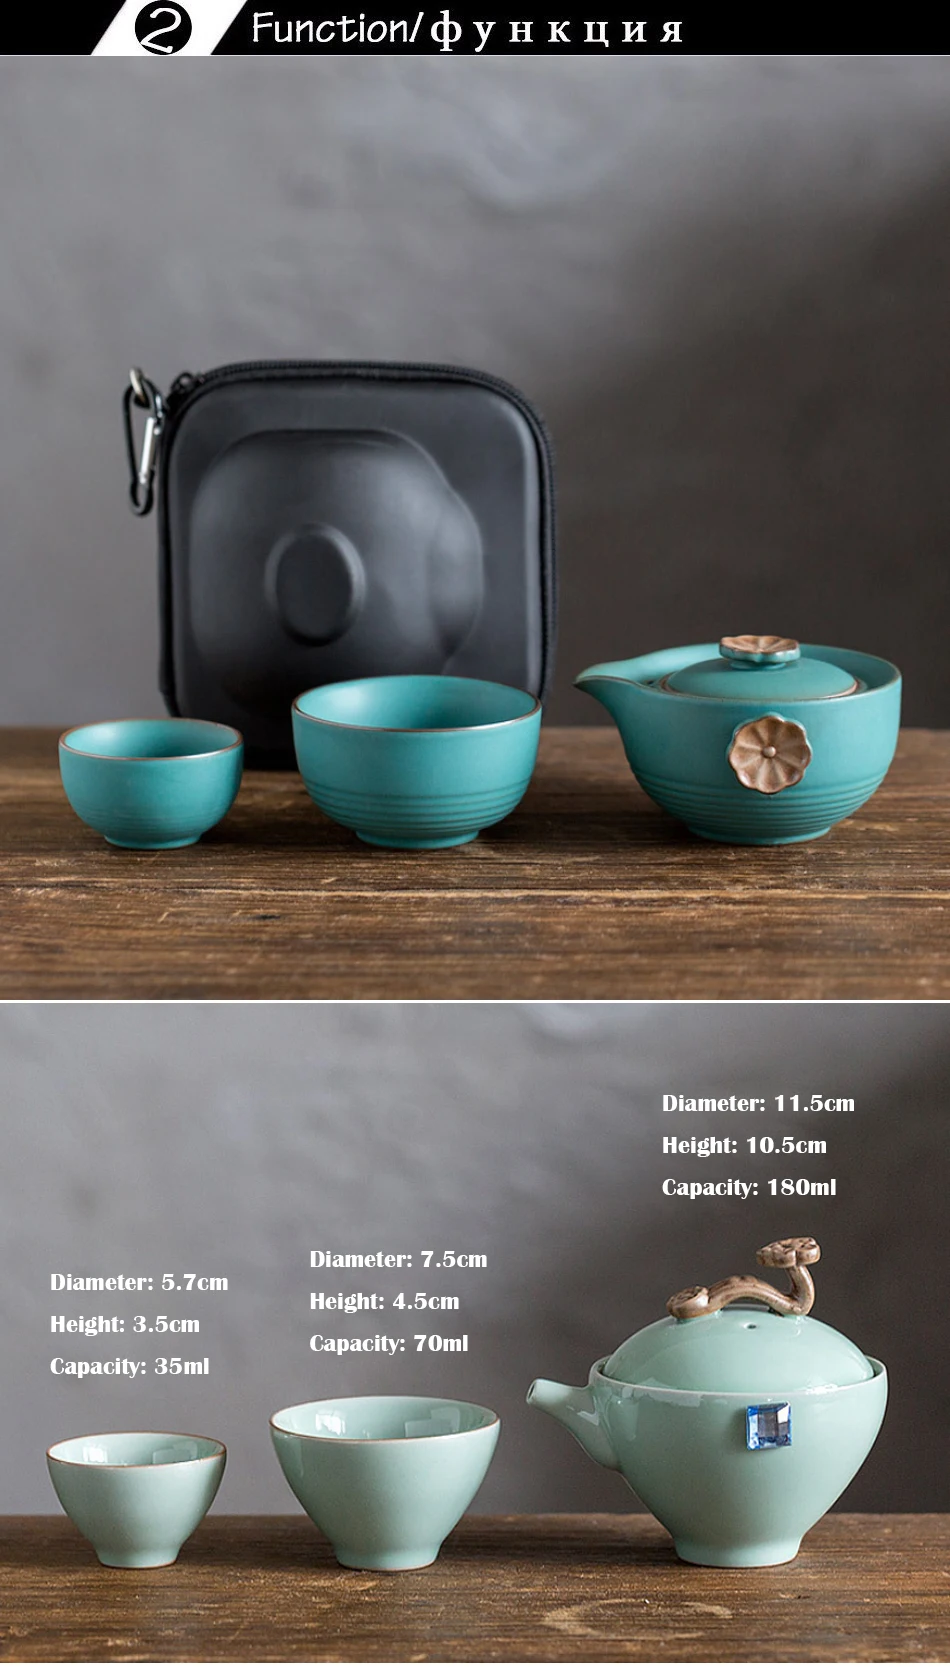 CAKEHOUD портативный дорожный чайный набор винтажный китайский/японский стиль керамический ручной чайный набор кунг-фу включает в себя 1 чайный горшок 2 чайные чашки 1 пакетик